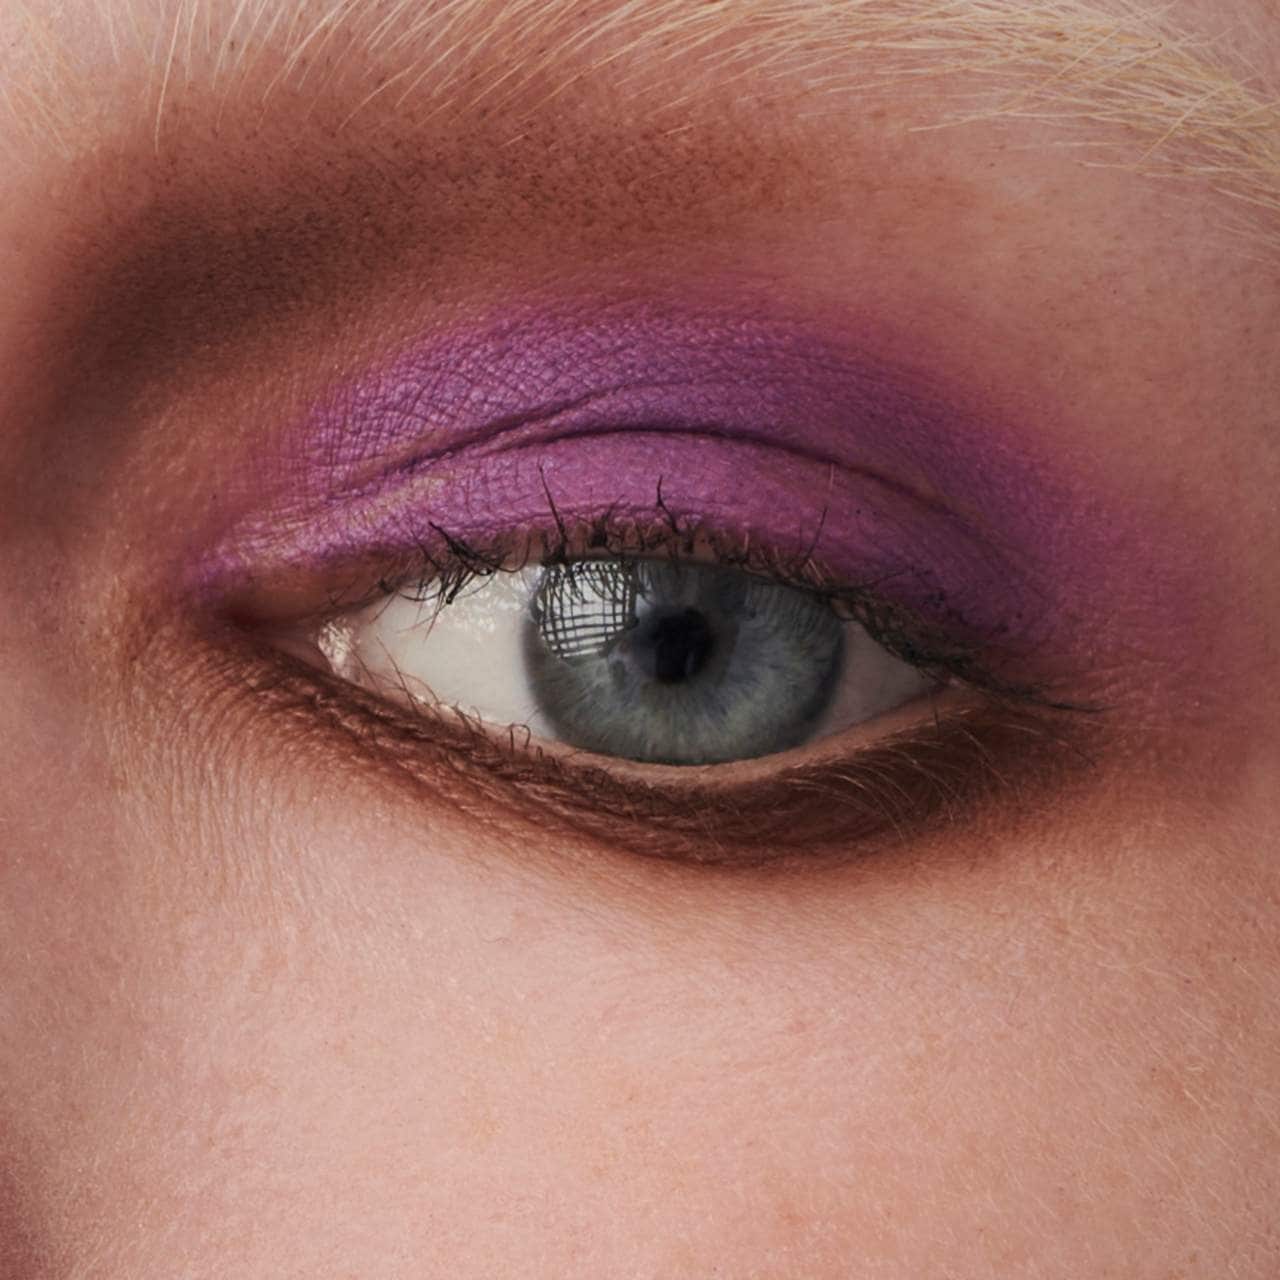 Prada Beauty Dimensions Multi-Effect Refillable Eyeshadow Palette in 01 PORTRAIT